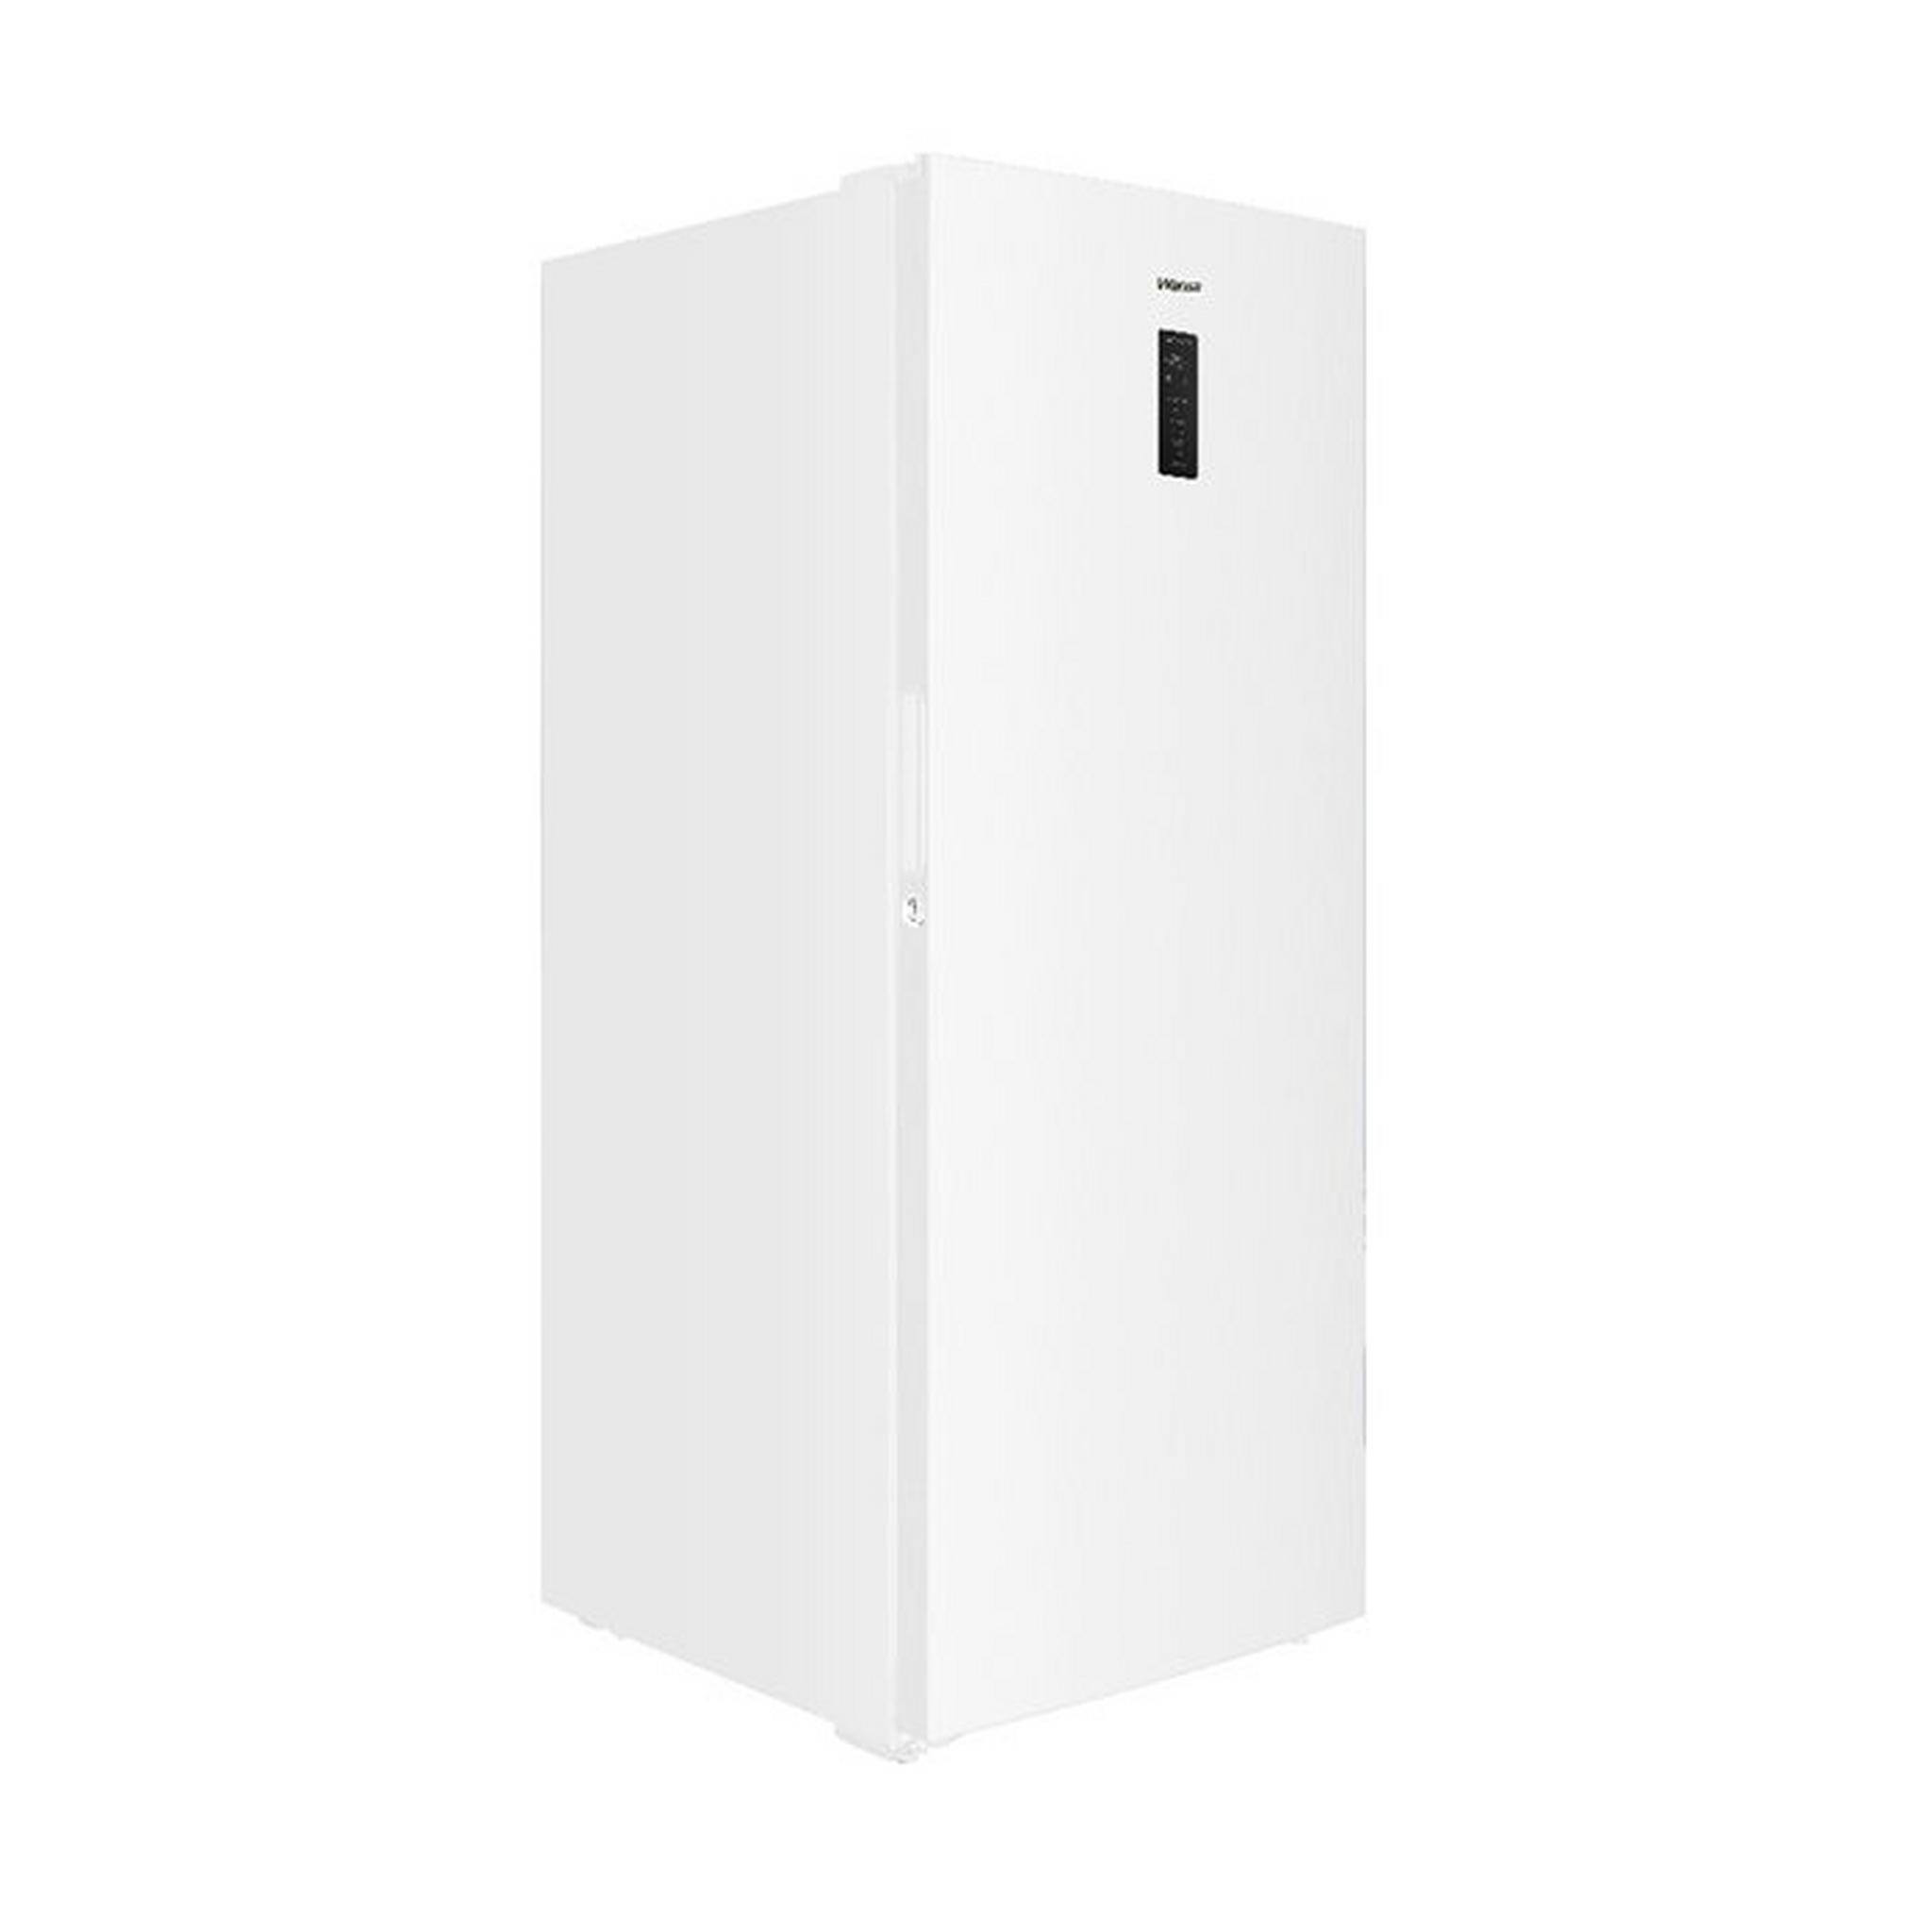 WANSA Upright Freezer, 17CFT,  481 Liters, WUOW540NFSC82 - White